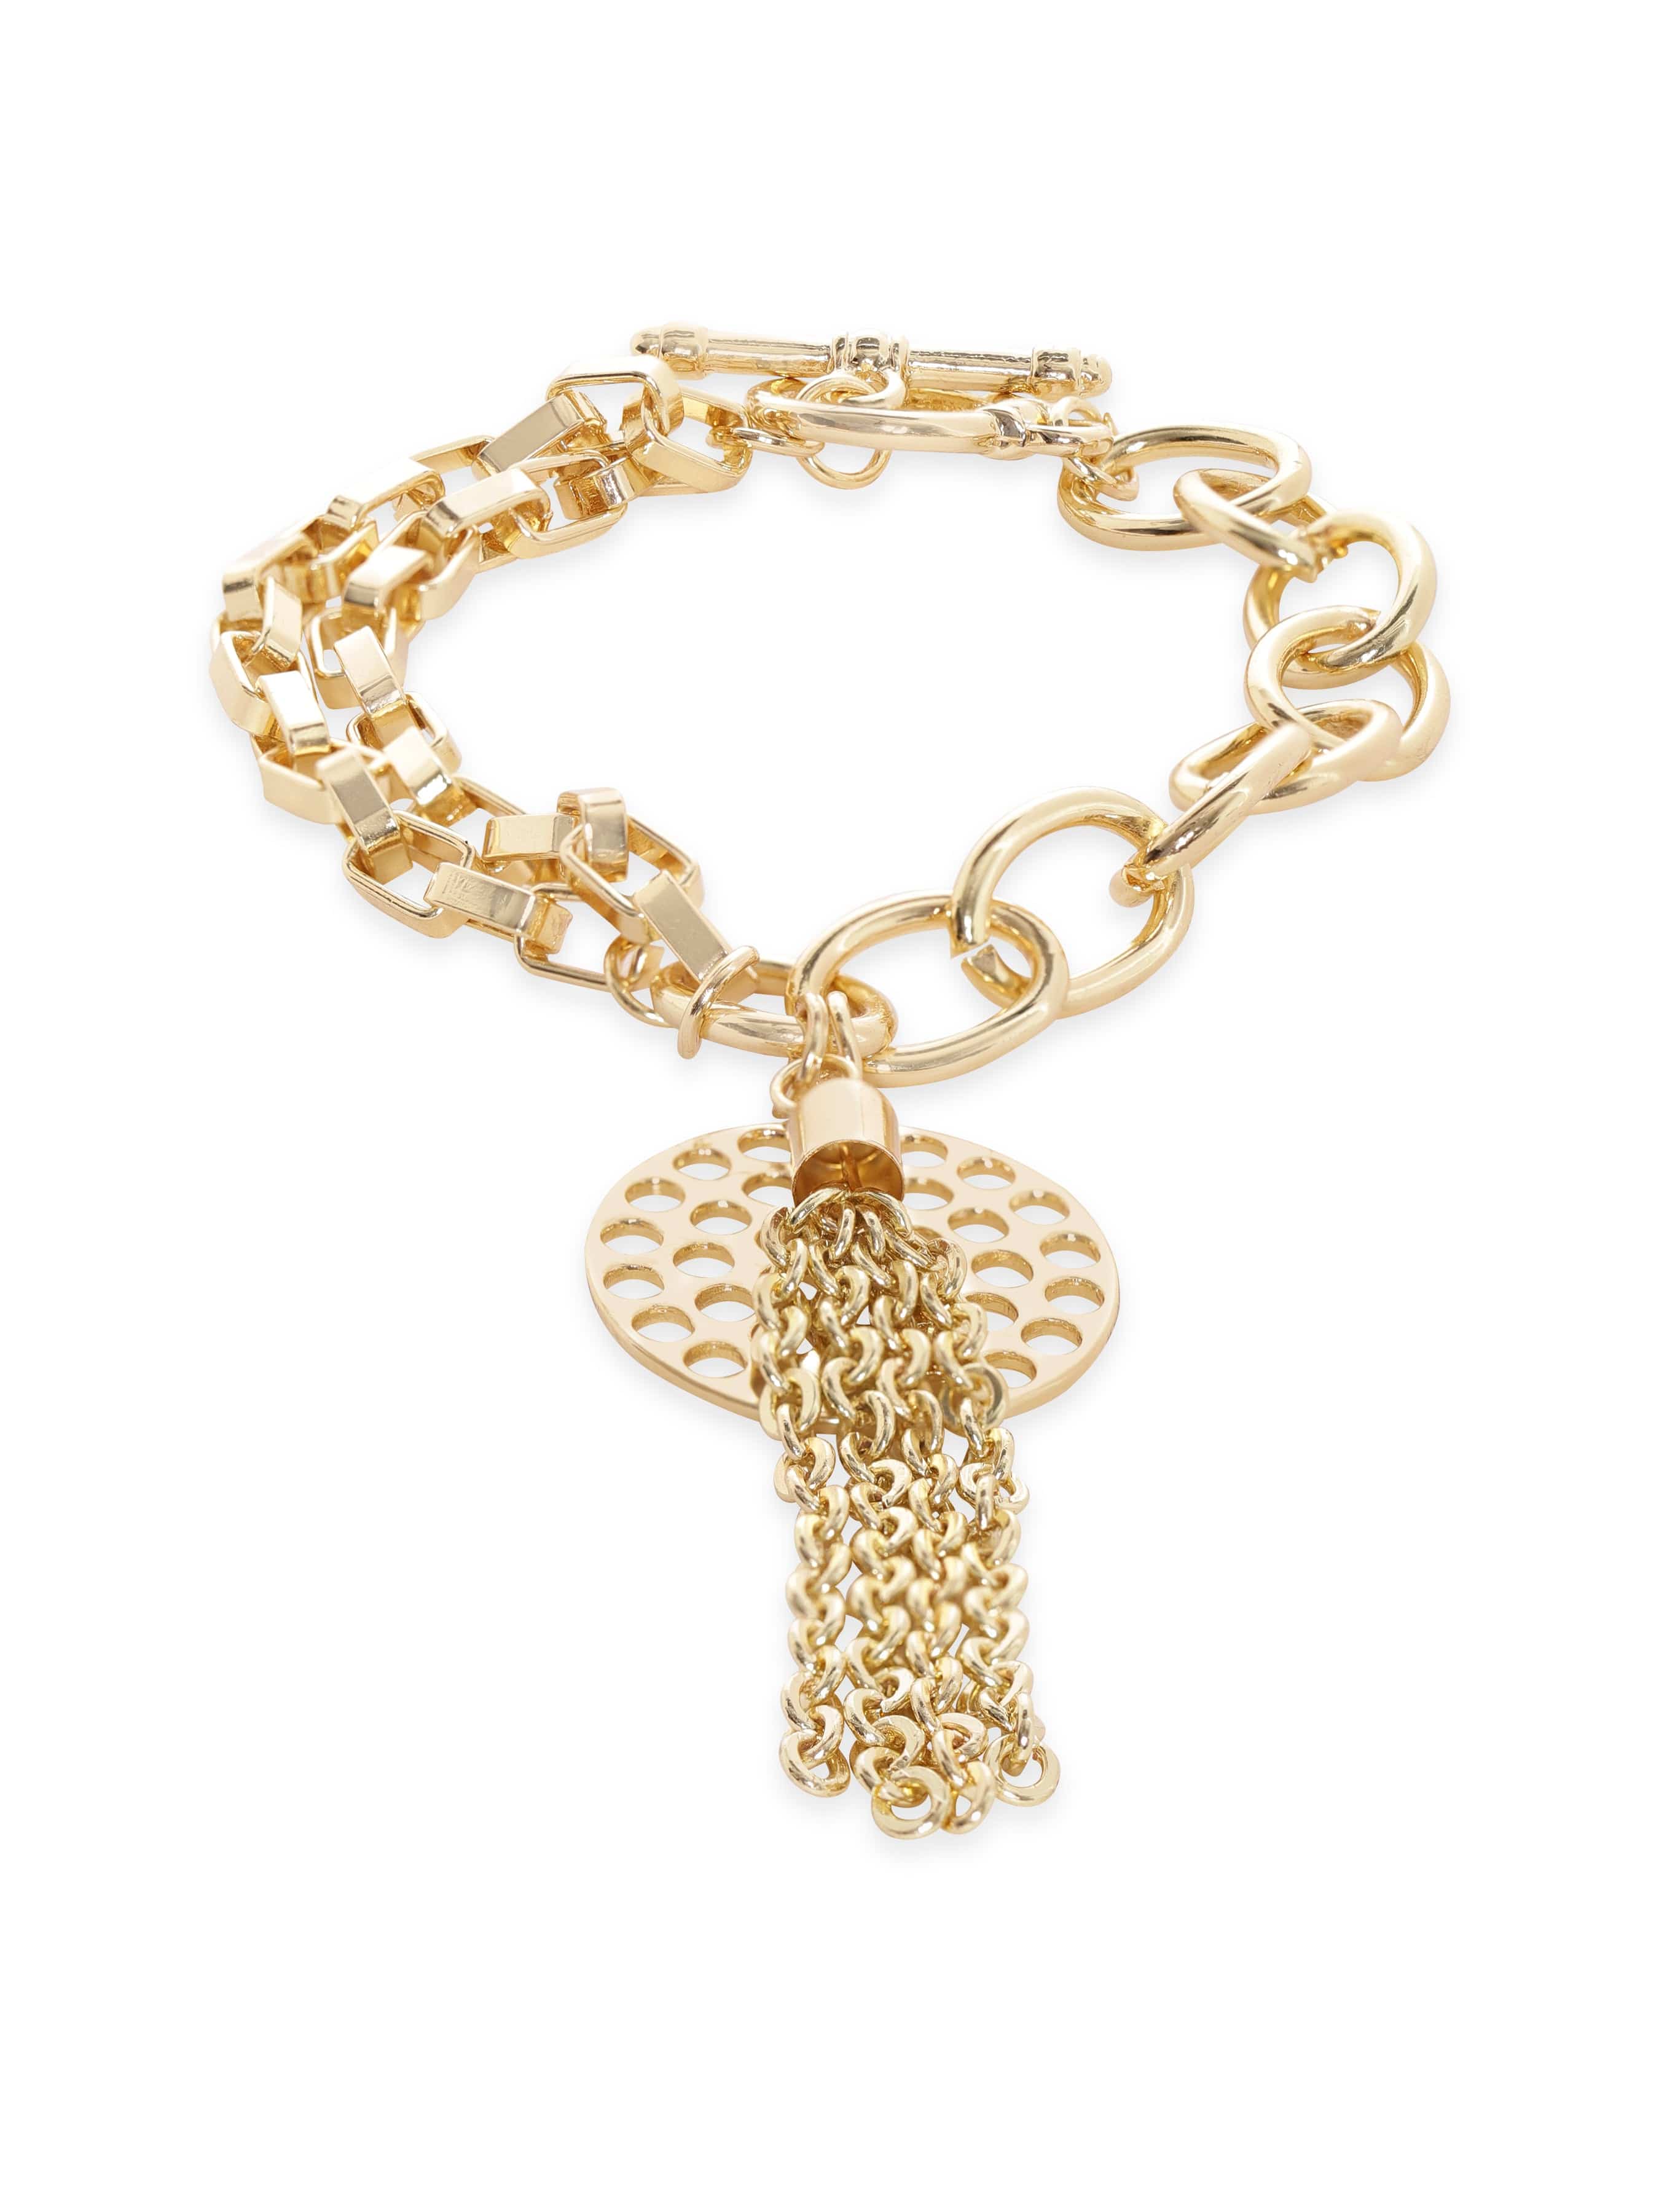 Buy 14K Gold Dangling Leaf Bracelet, Leaf Charm Bracelet, Coin Charm Chain  Bracelet Jewelry Online in India - Etsy